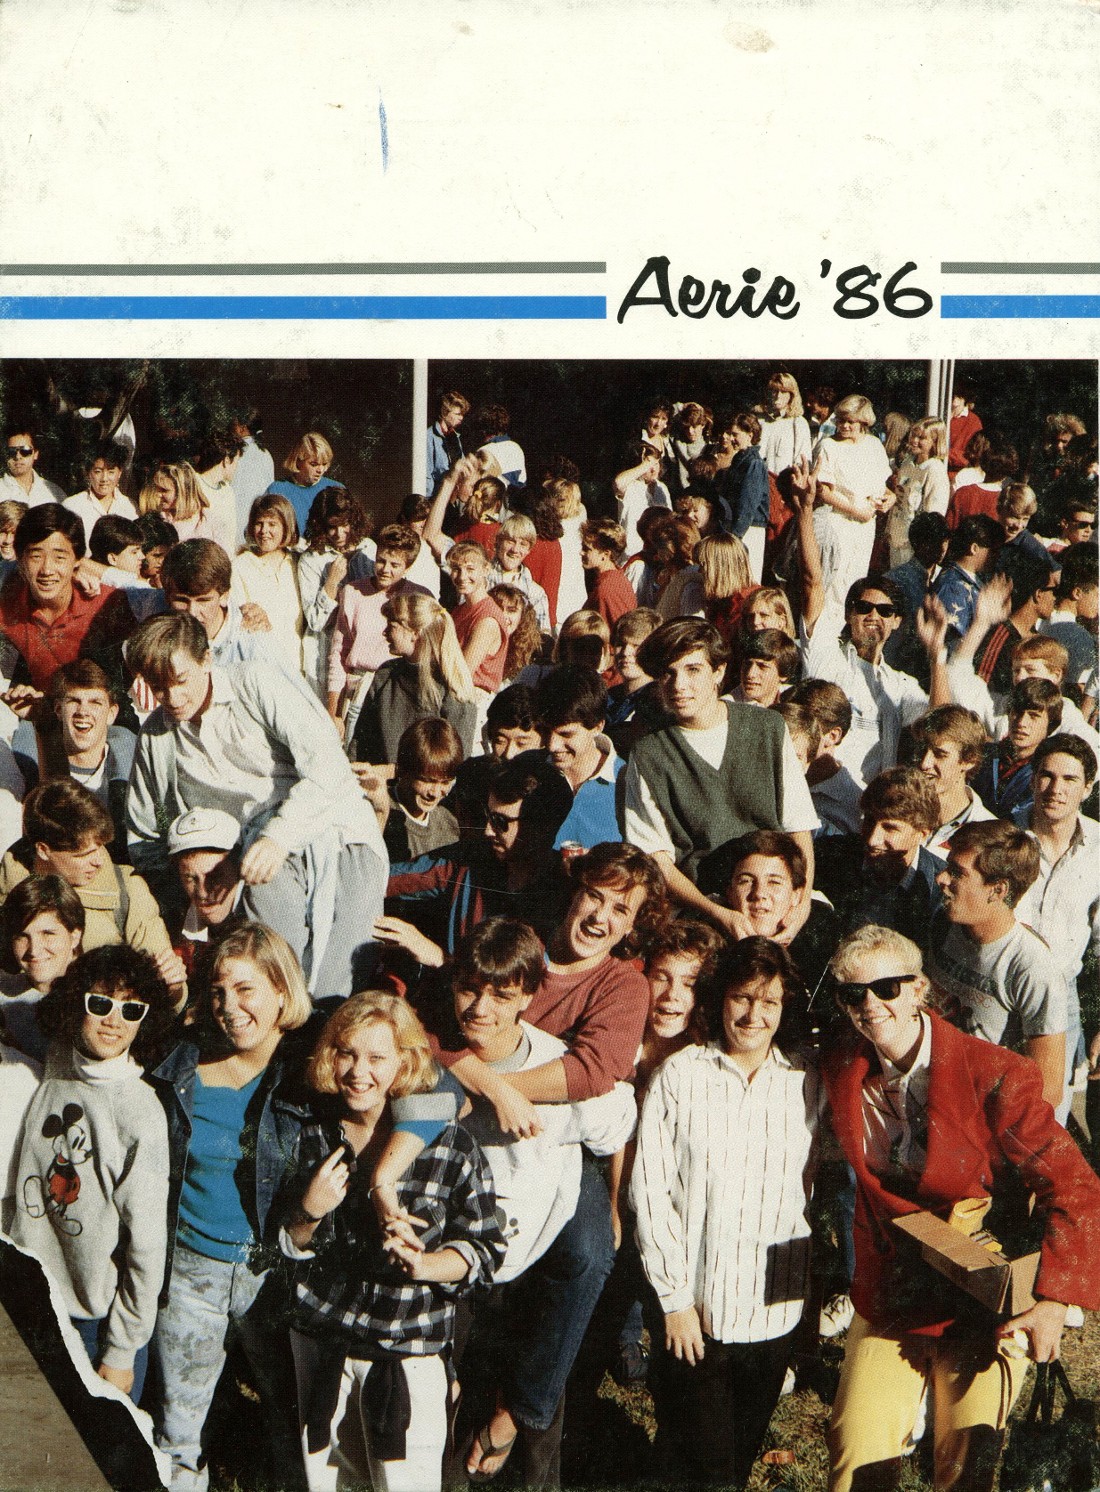 1986 yearbook from Los Altos High School from Los altos California